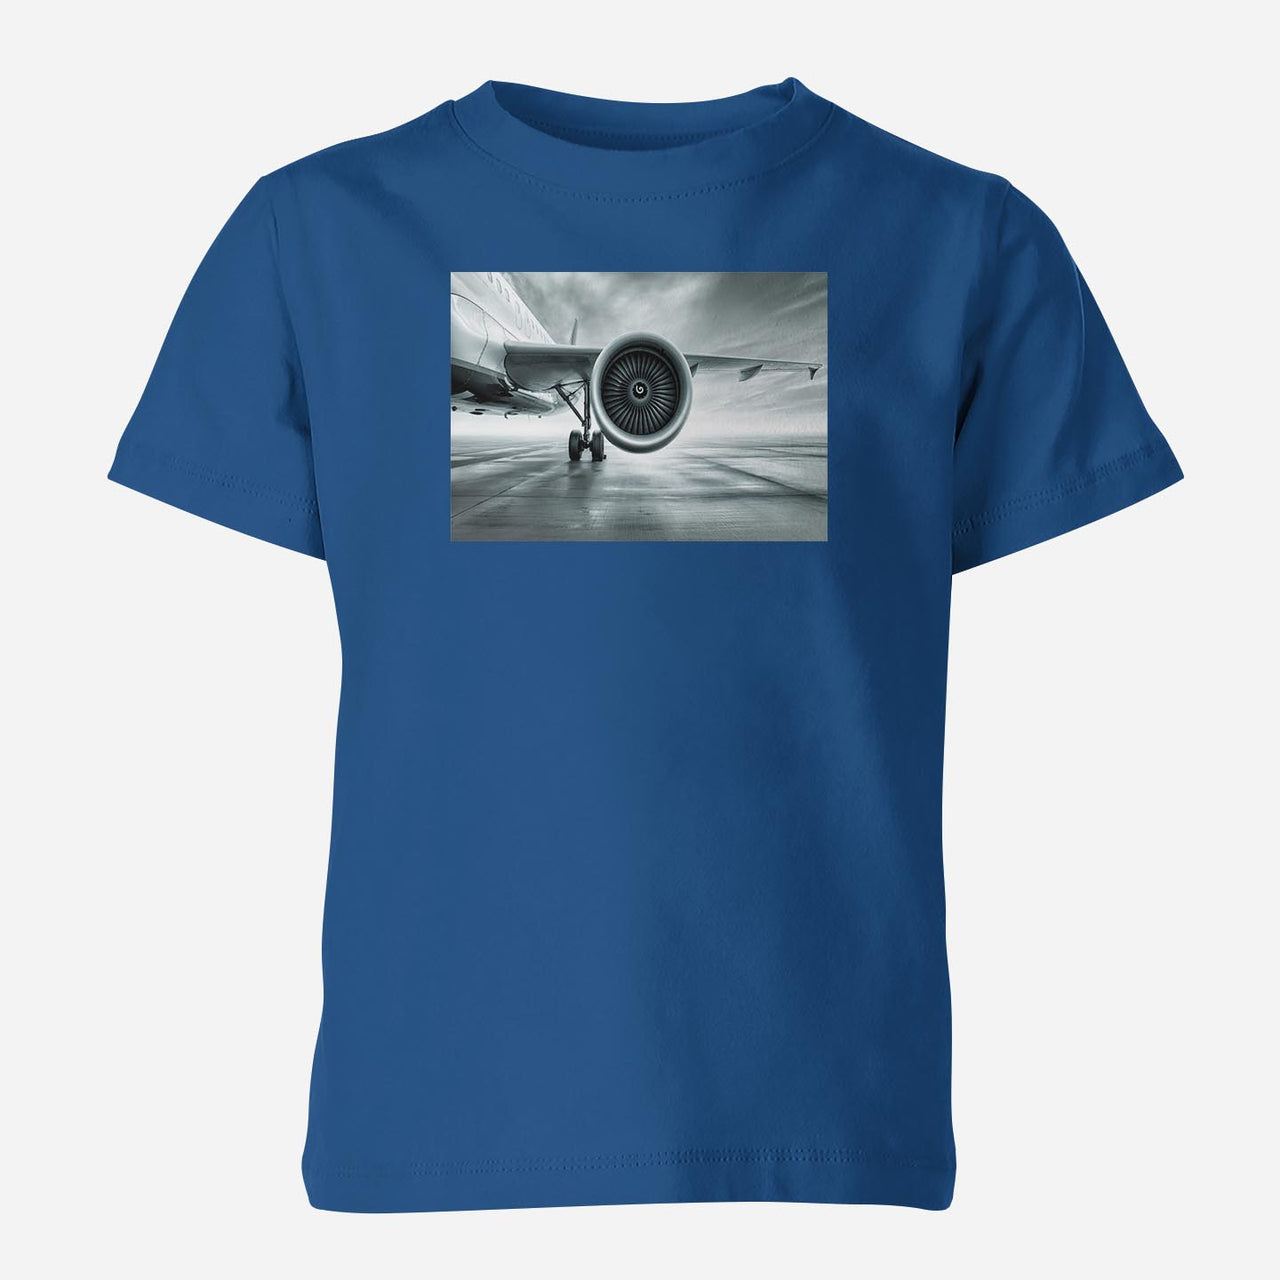 Super Cool Airliner Jet Engine Designed Children T-Shirts